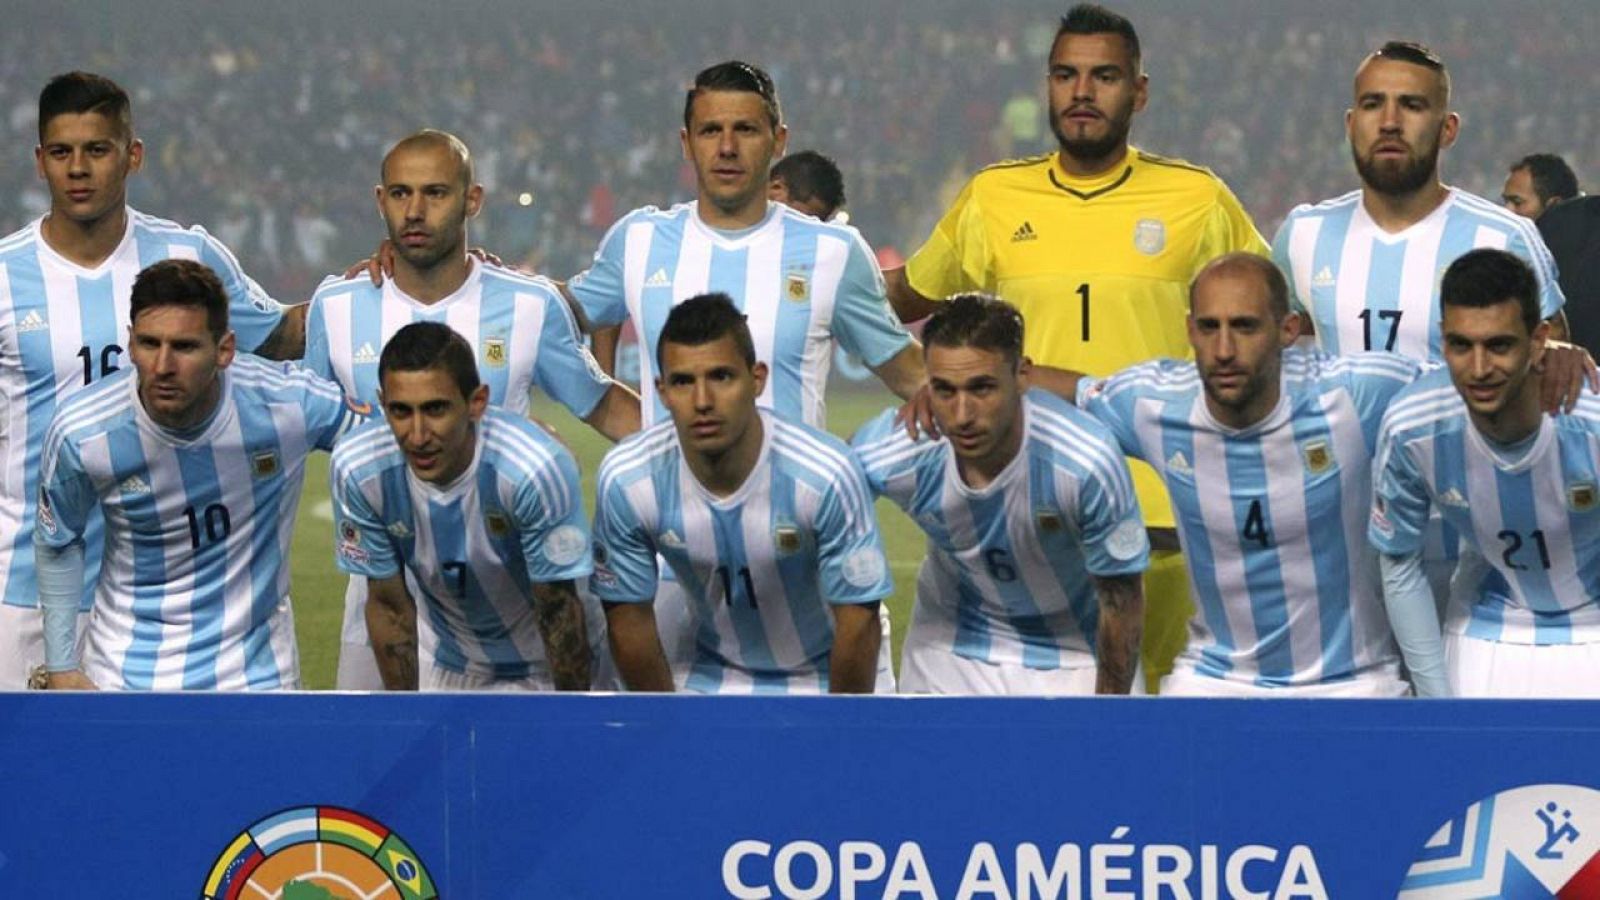 La selección de Argentina se coloca líder de la clasificación FIFA pese a perder la Copa América.